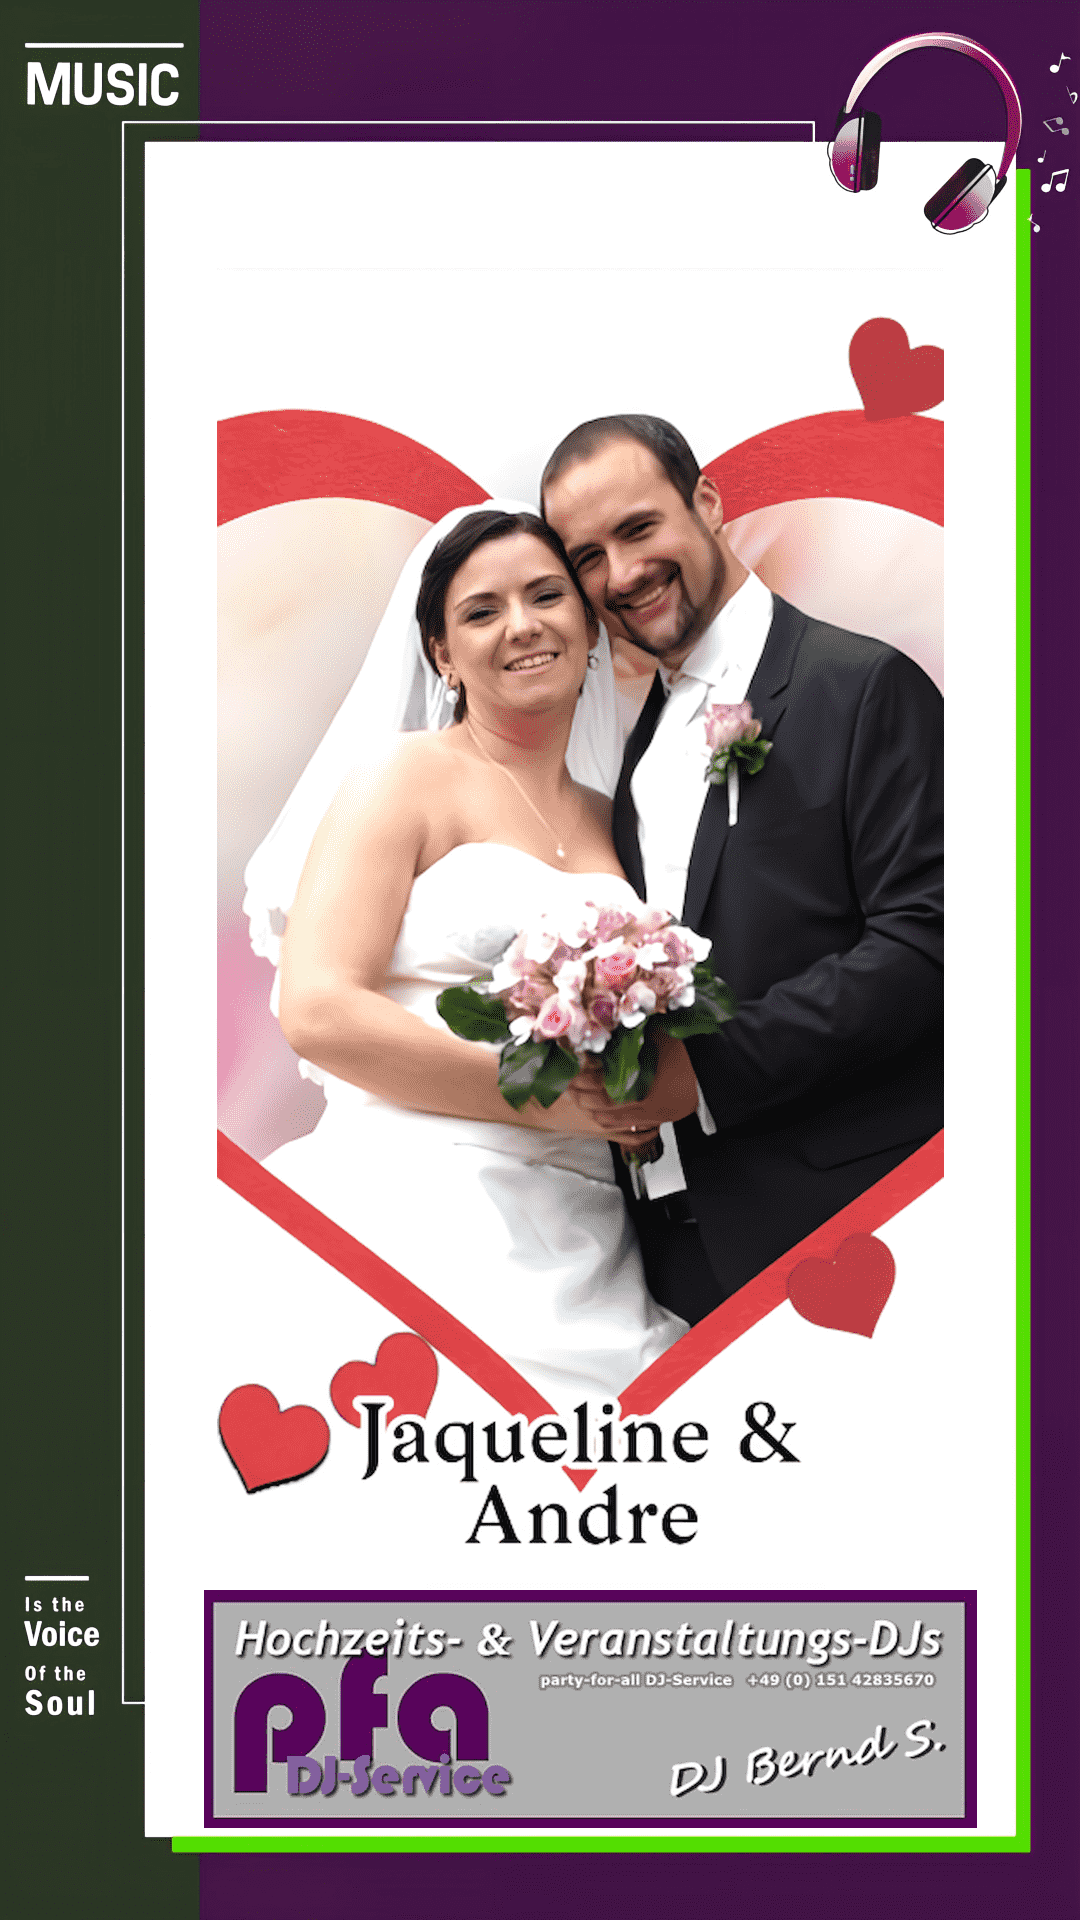 Jaqueline & André